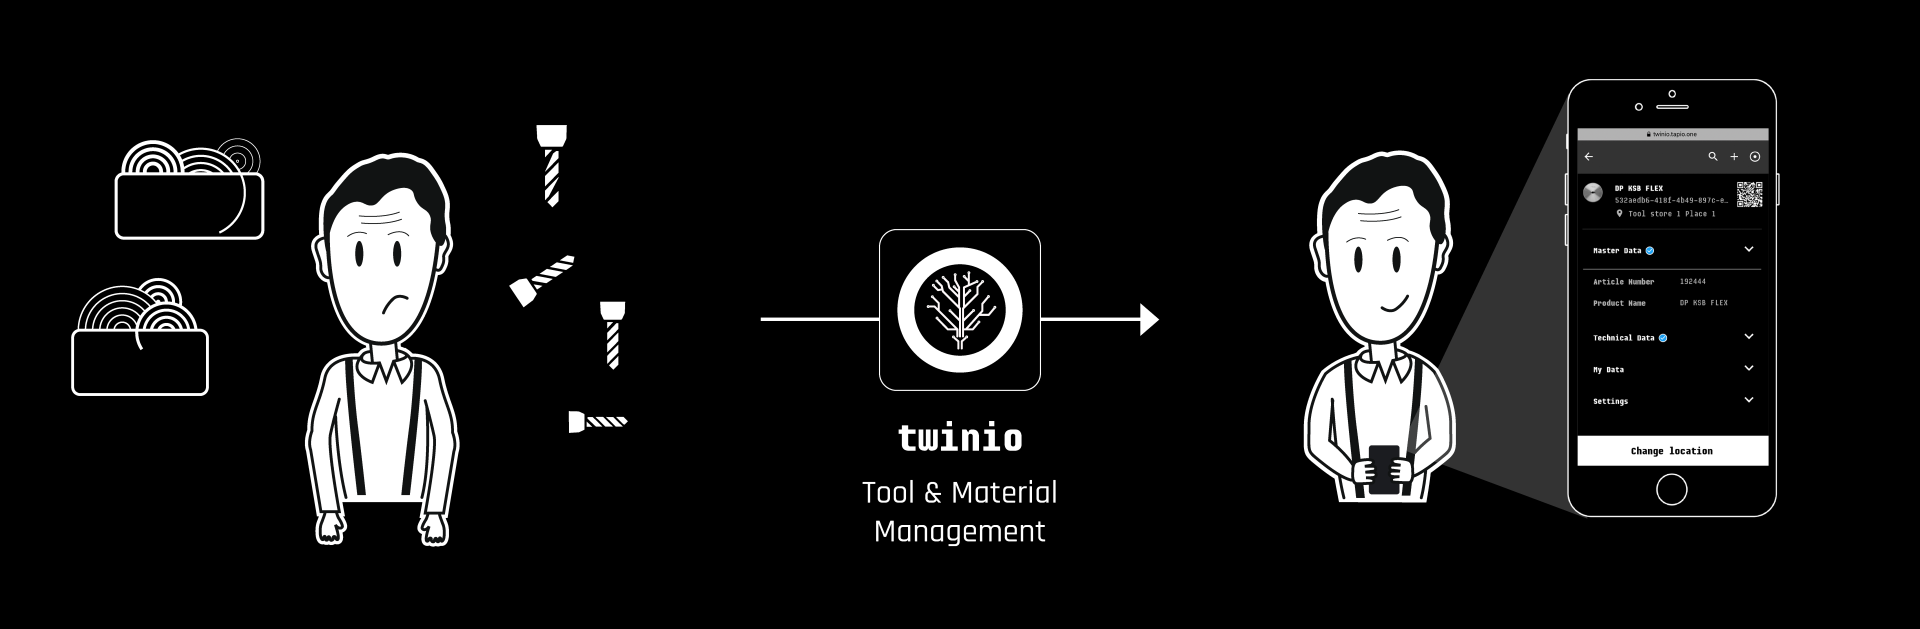 web- tapio twinio Joey Website tools materials condition EN